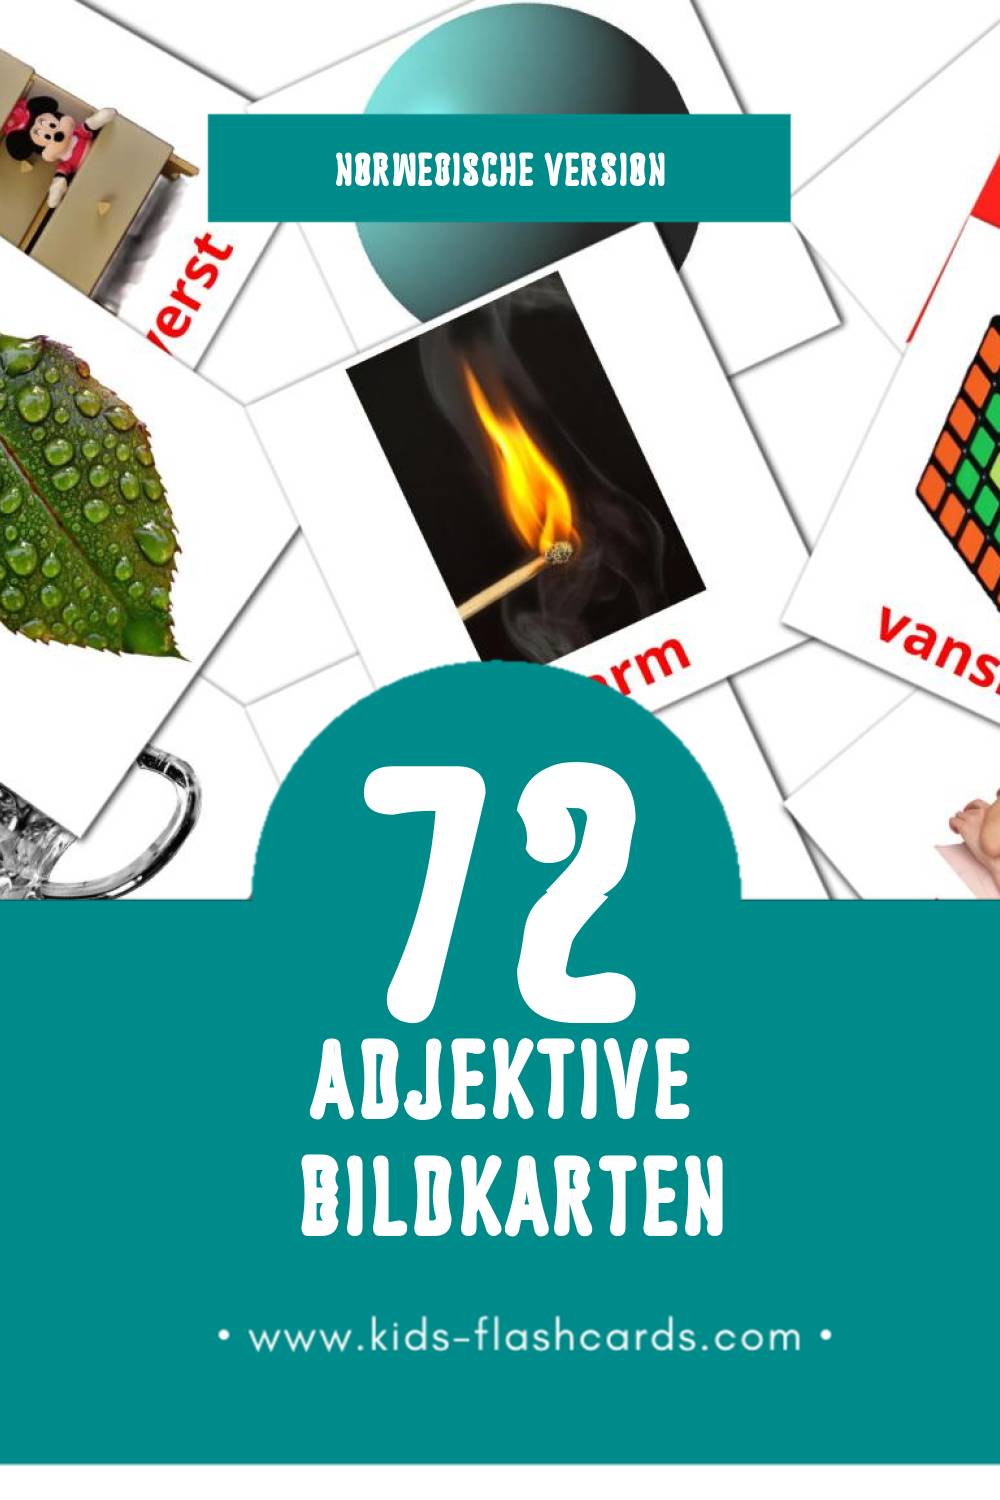 Visual adjektiv Flashcards für Kleinkinder (74 Karten in Norwegisch)